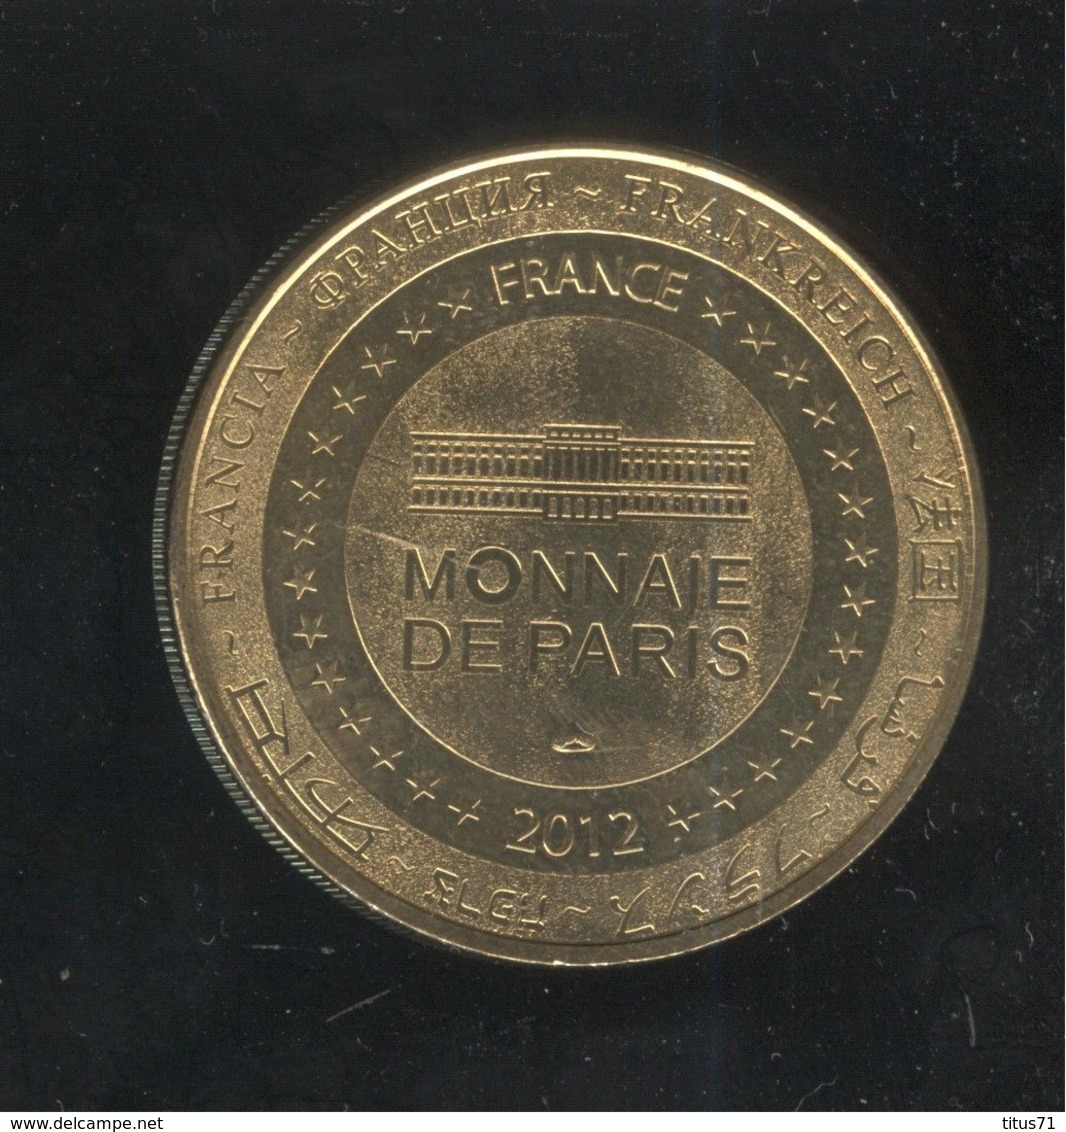 Jeton Touristique Monnaie De Paris - Vendée Globe - 2012 - 2012